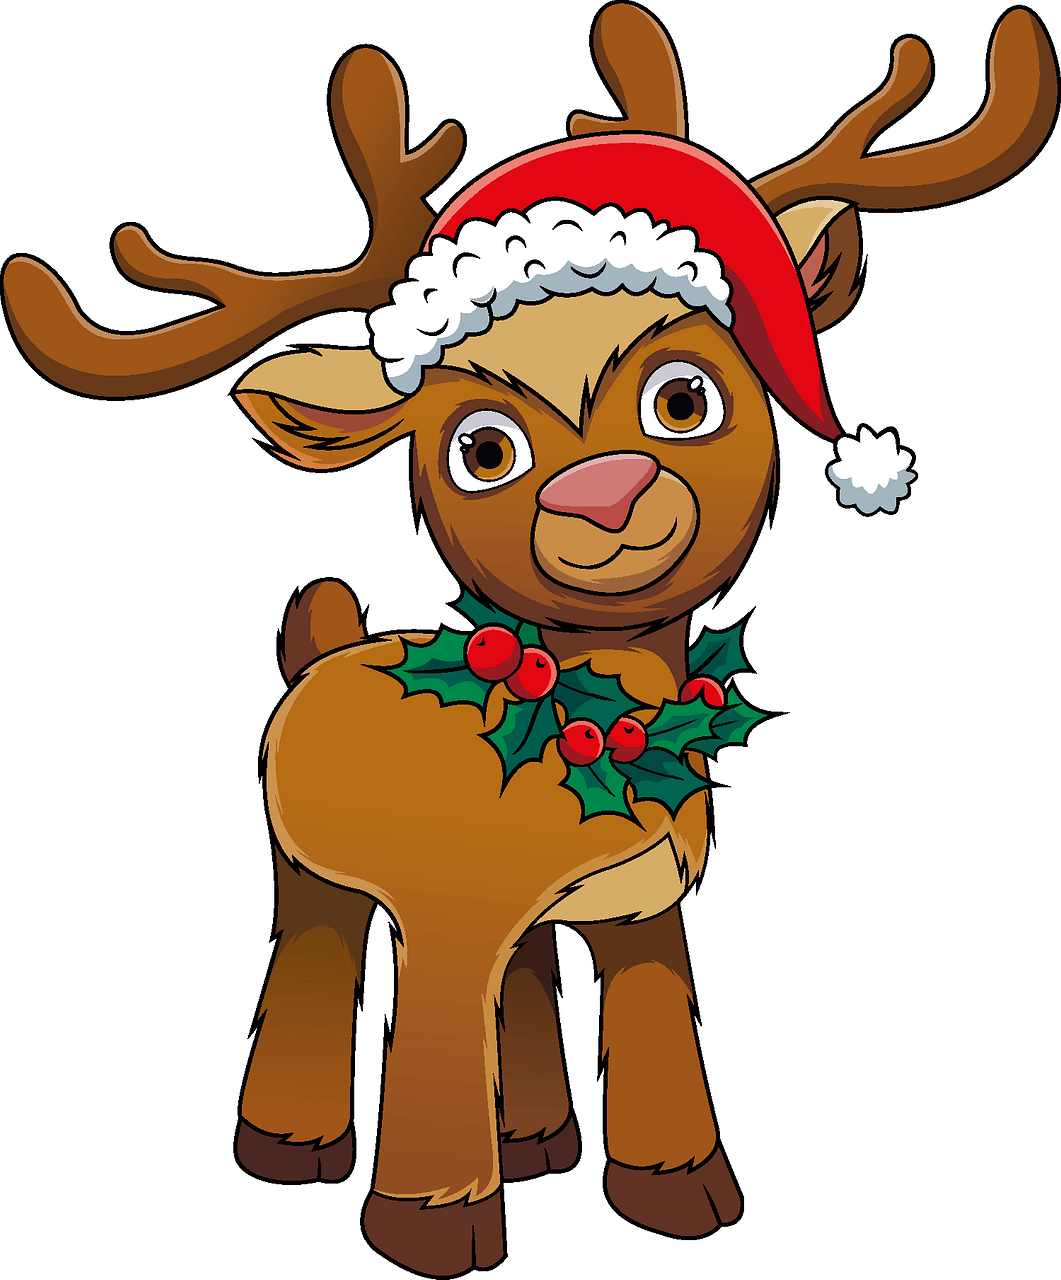 Reindeer Clipart Png - Cute Reindeer Clip Art - 432x432 PNG - Clip Art ...